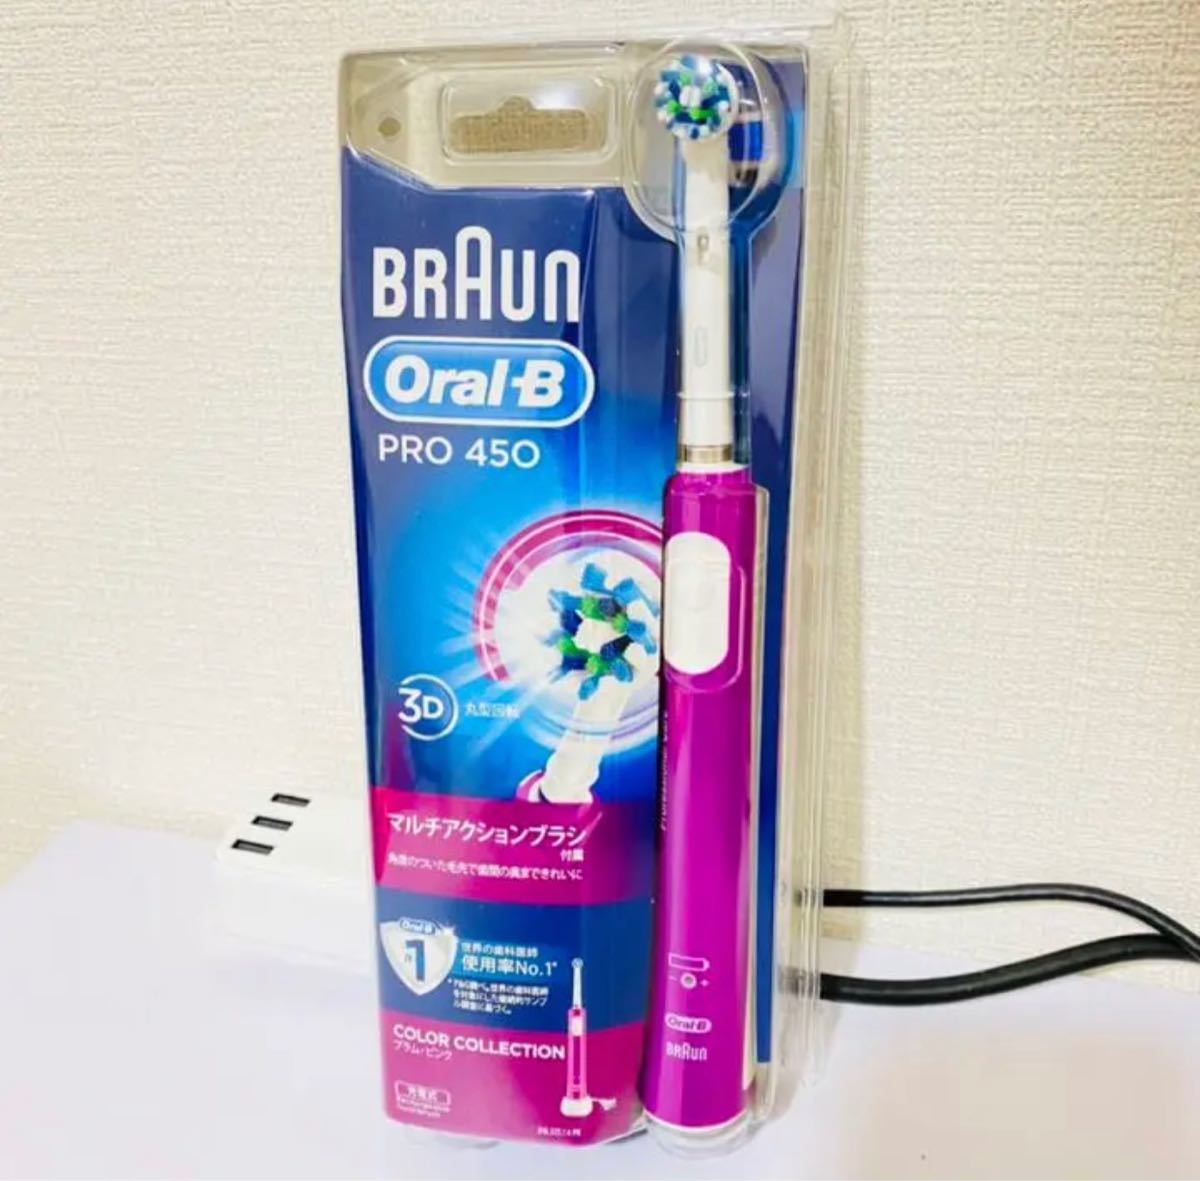 【新品,未開封】電動歯ブラシ BRAUN(ブラウン) オーラルB PRO450 BRAUN ブラウン電動歯ブラシ オーラルB